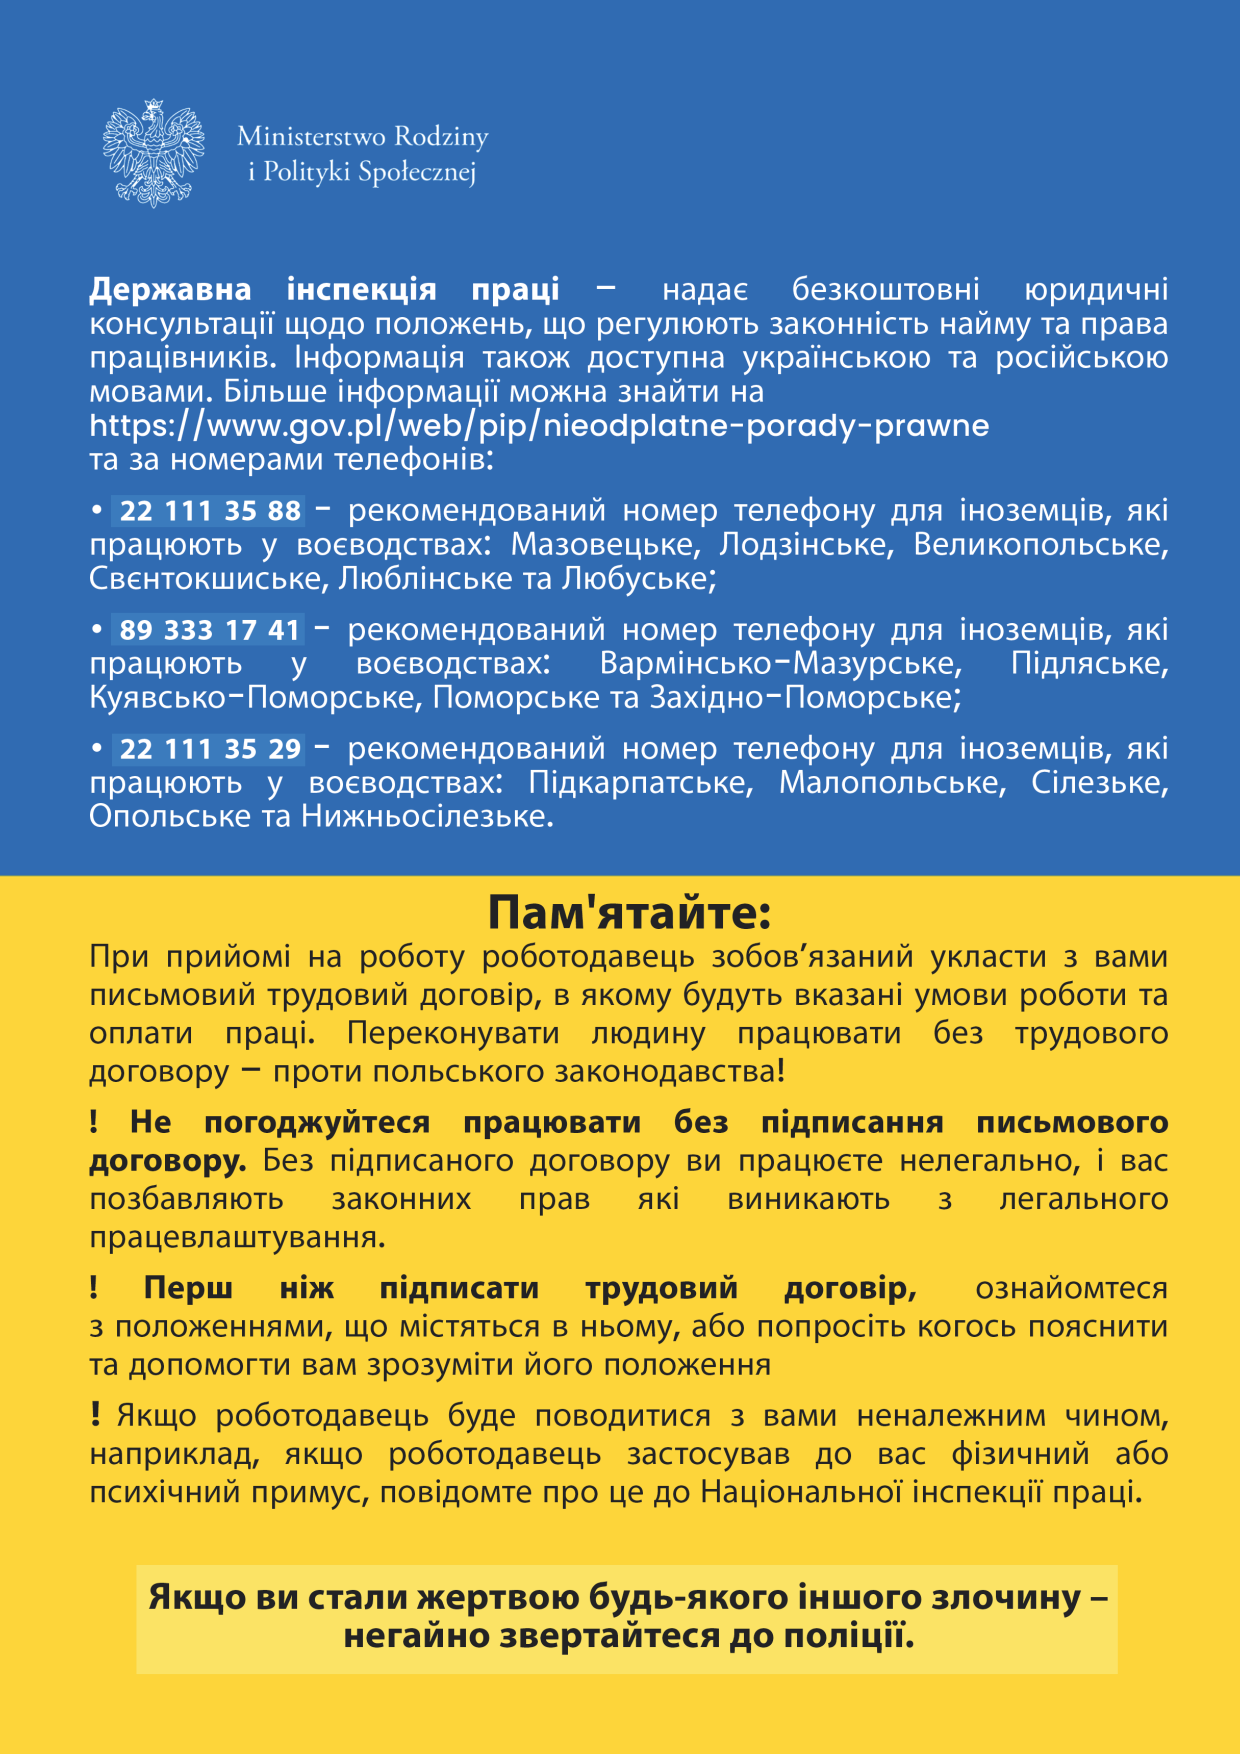 Поради для громадян України, які бажають працевлаштуватися в Польщі